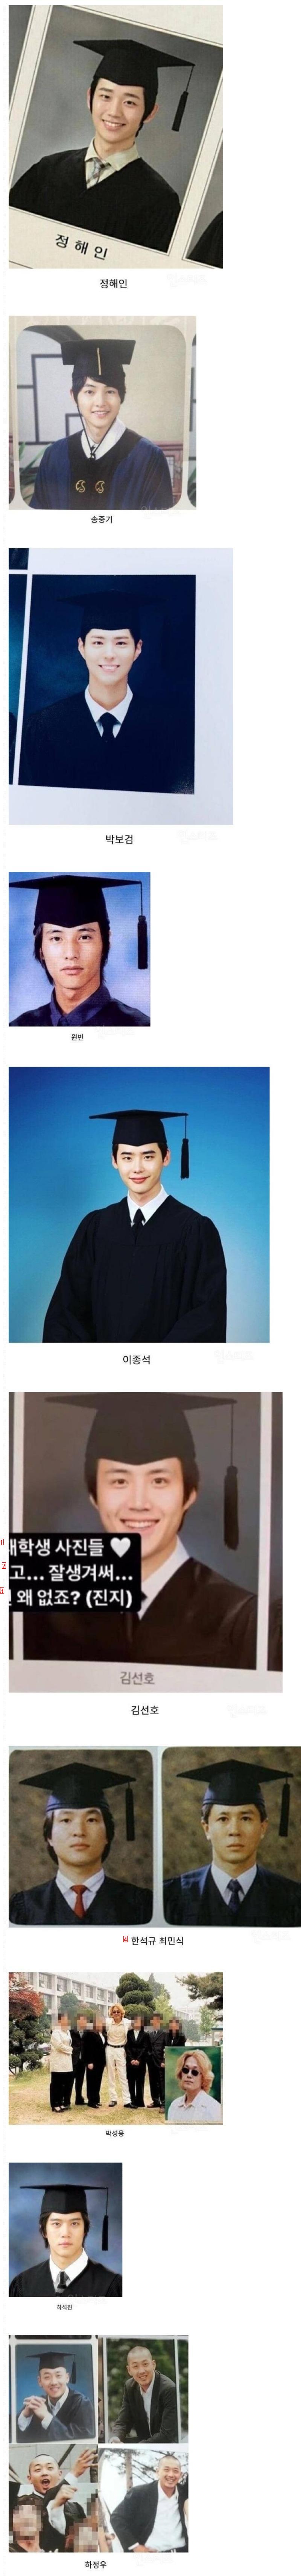 남자 배우의 졸업 사진.